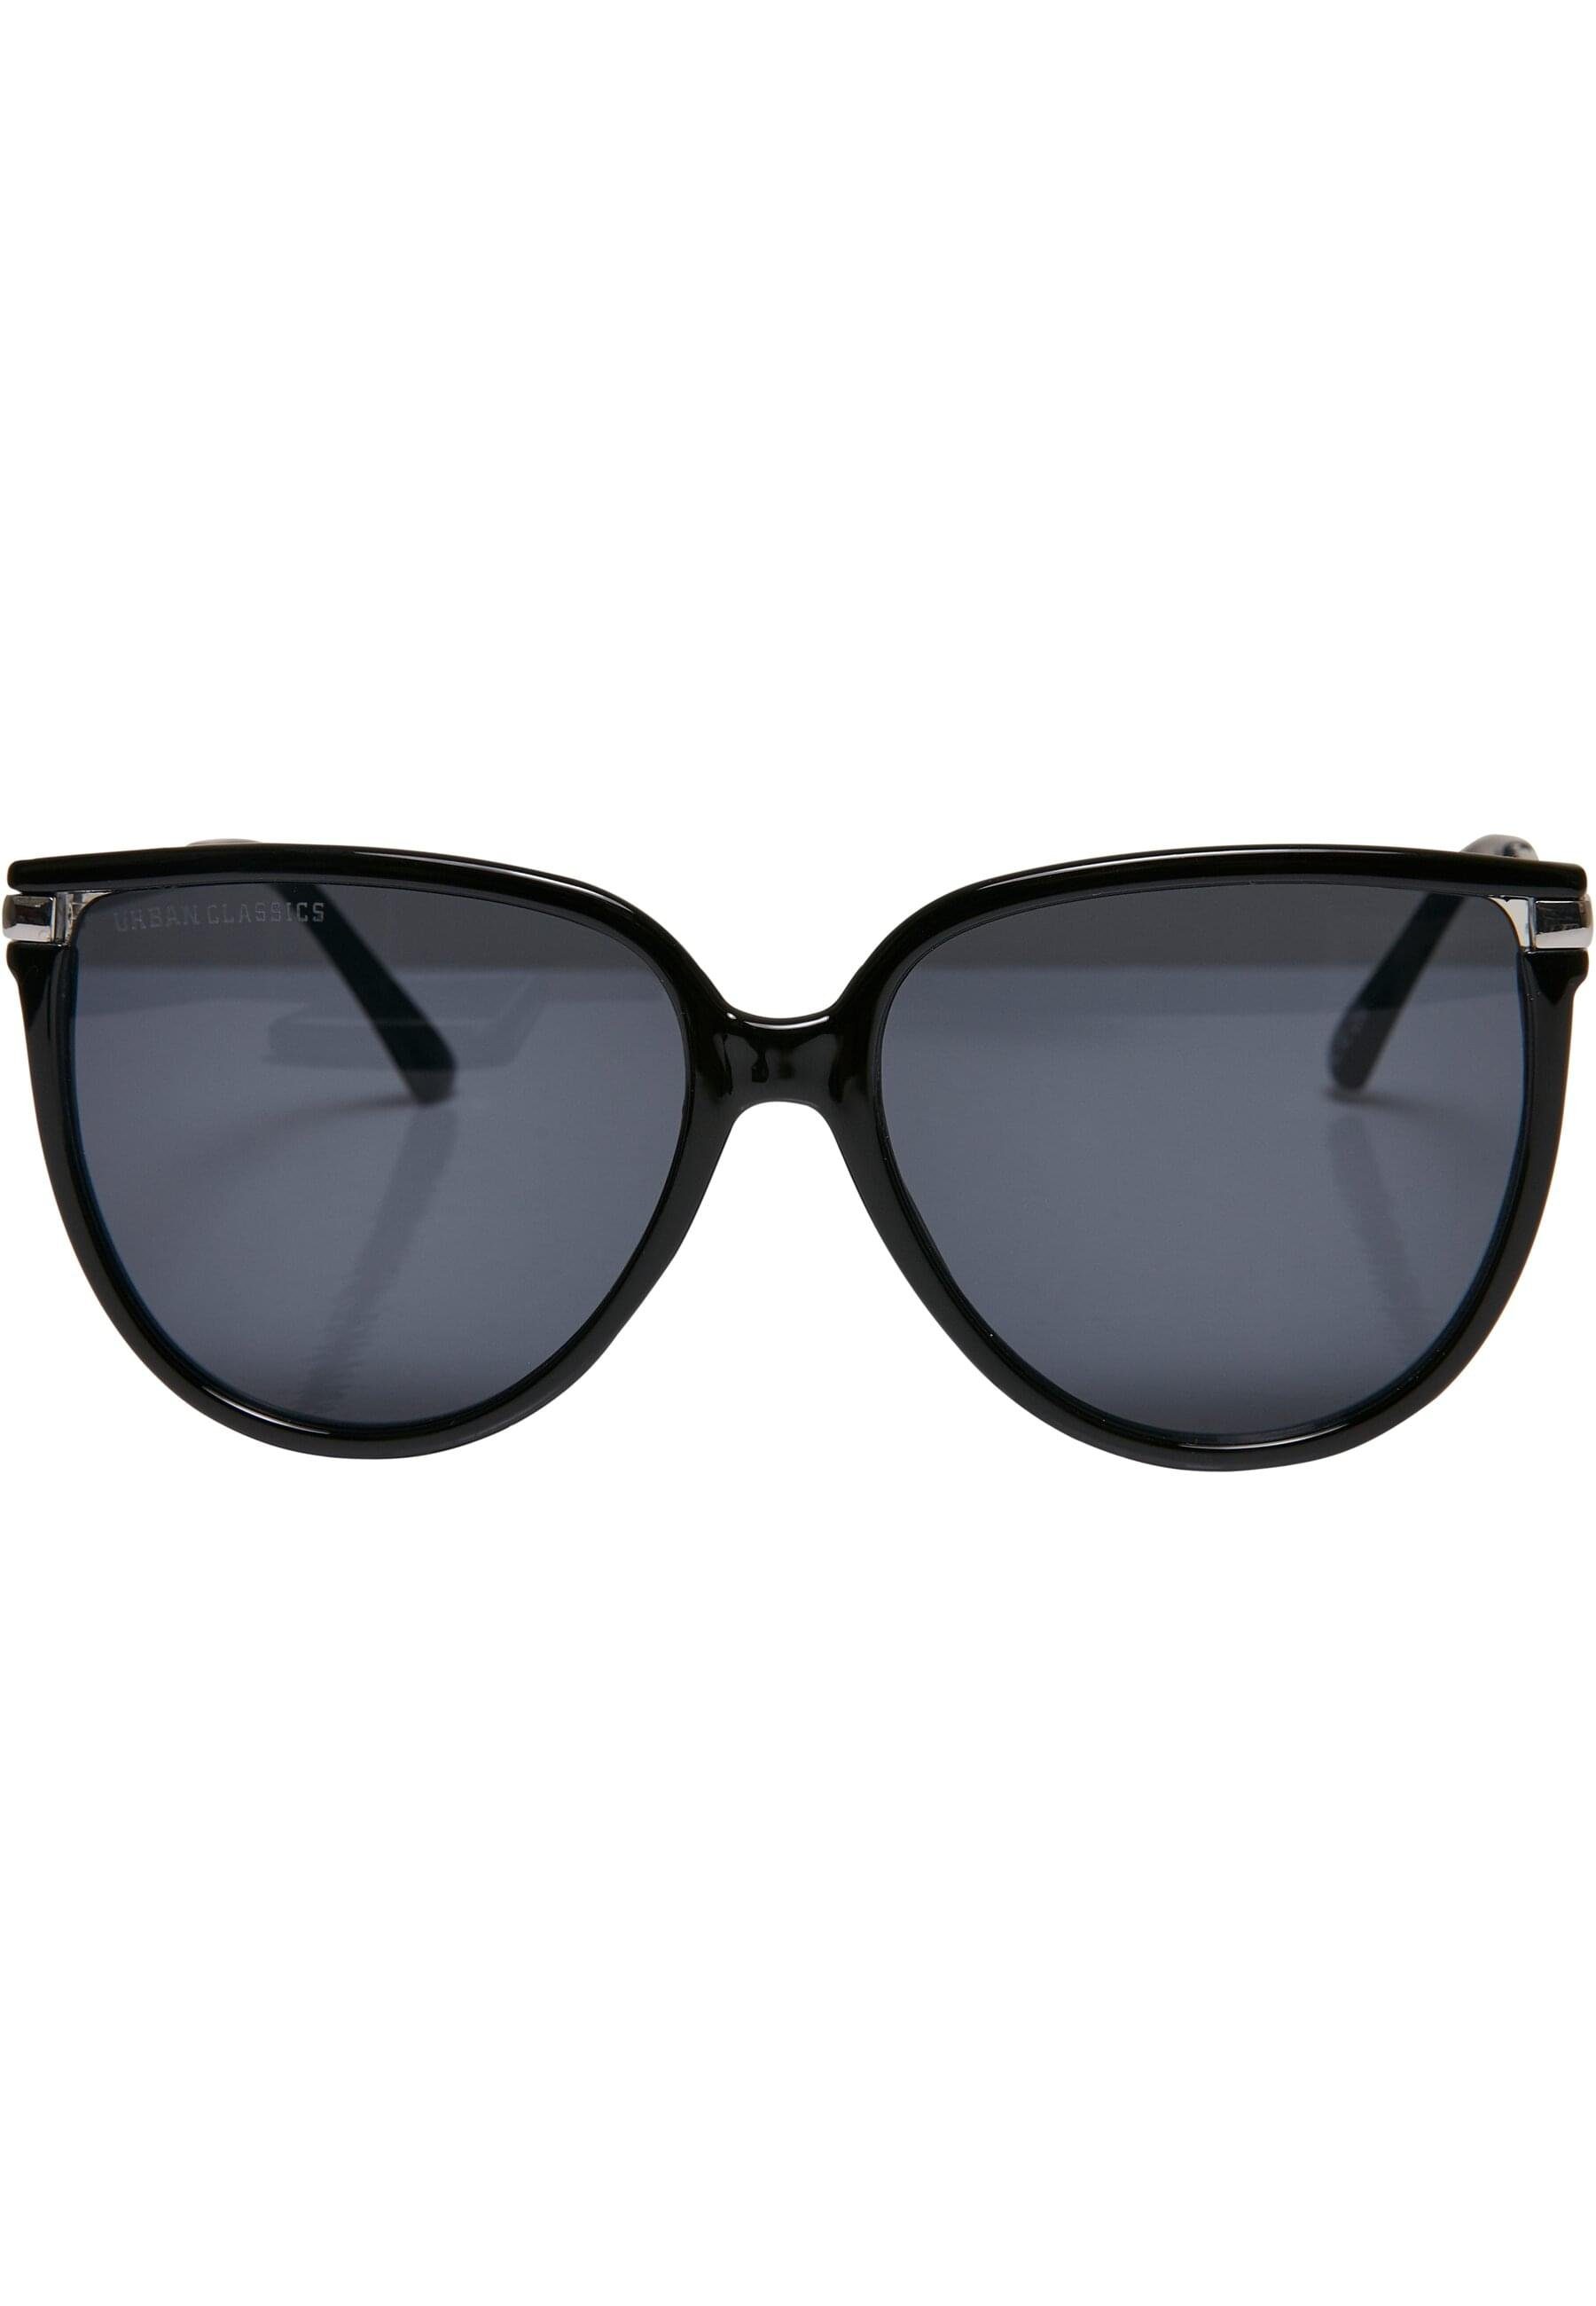 Unisex Sunglasses Sonnenbrille URBAN Milano CLASSICS